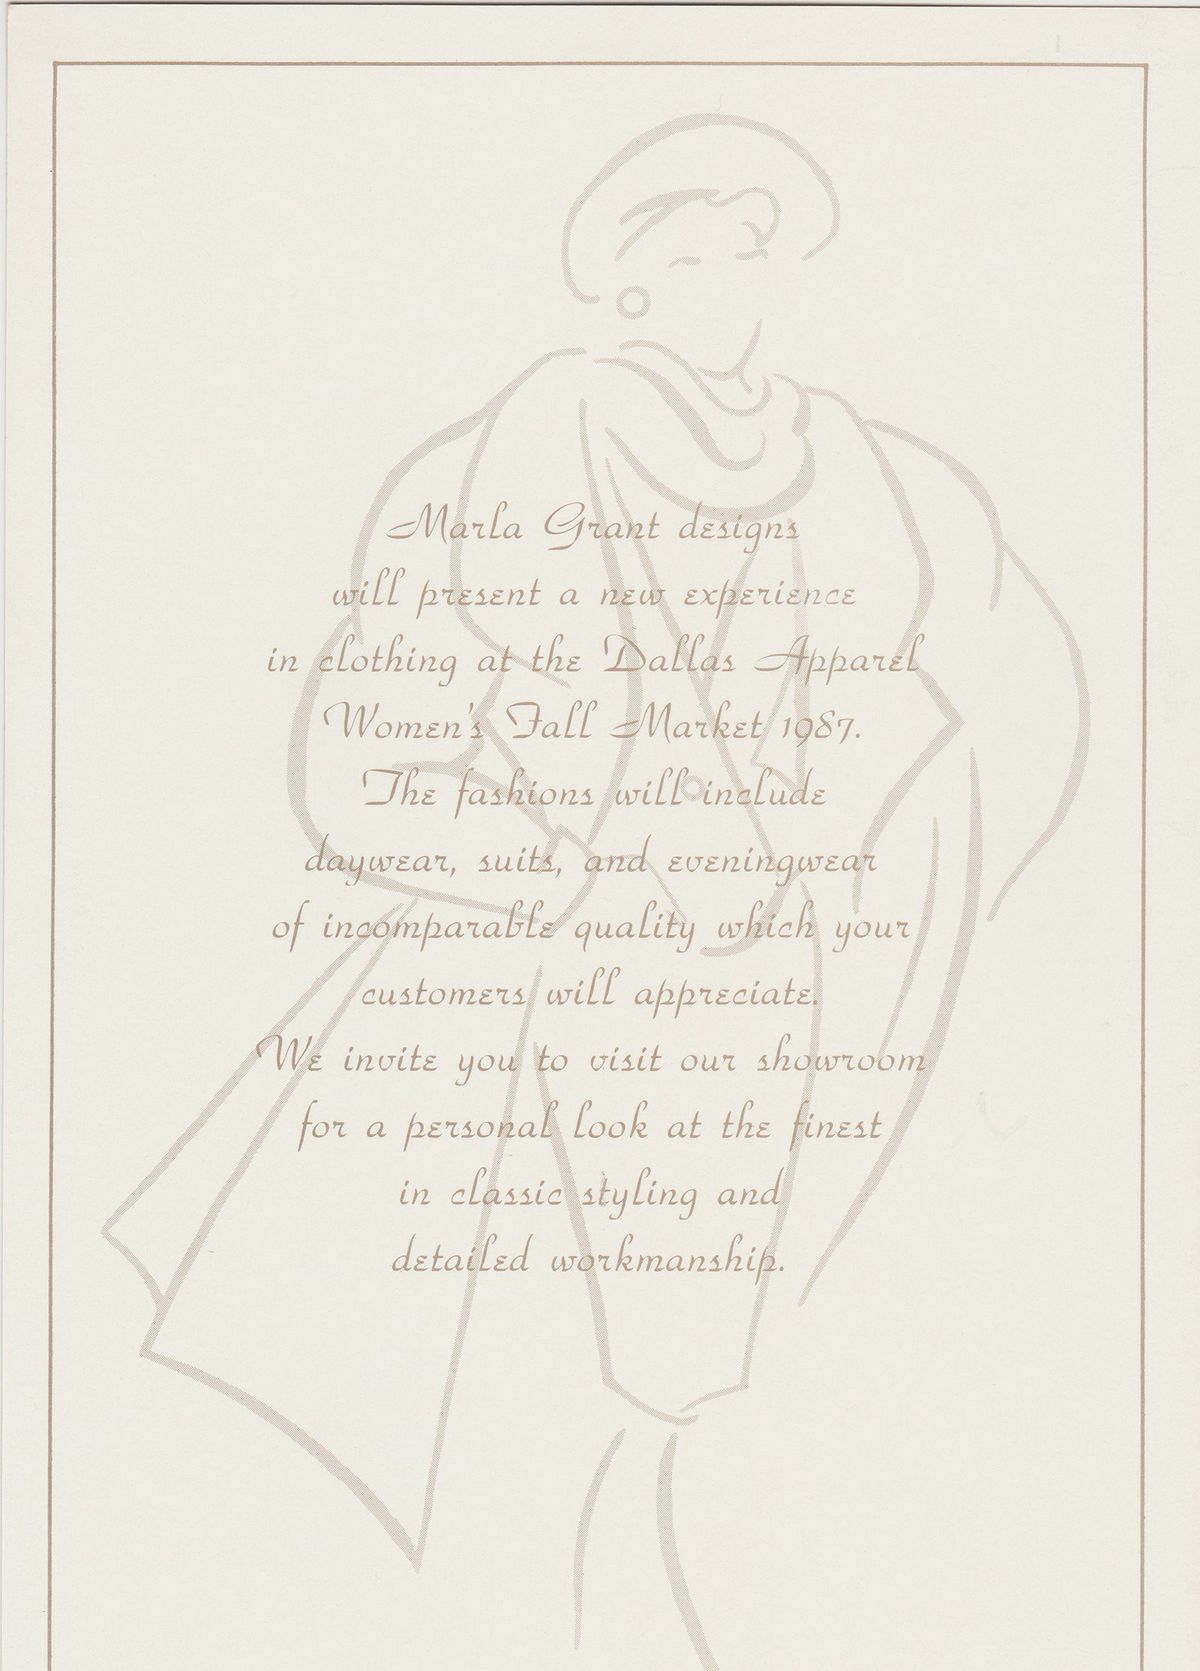 Un dibujo lineal de una mujer en el fondo de una invitación.